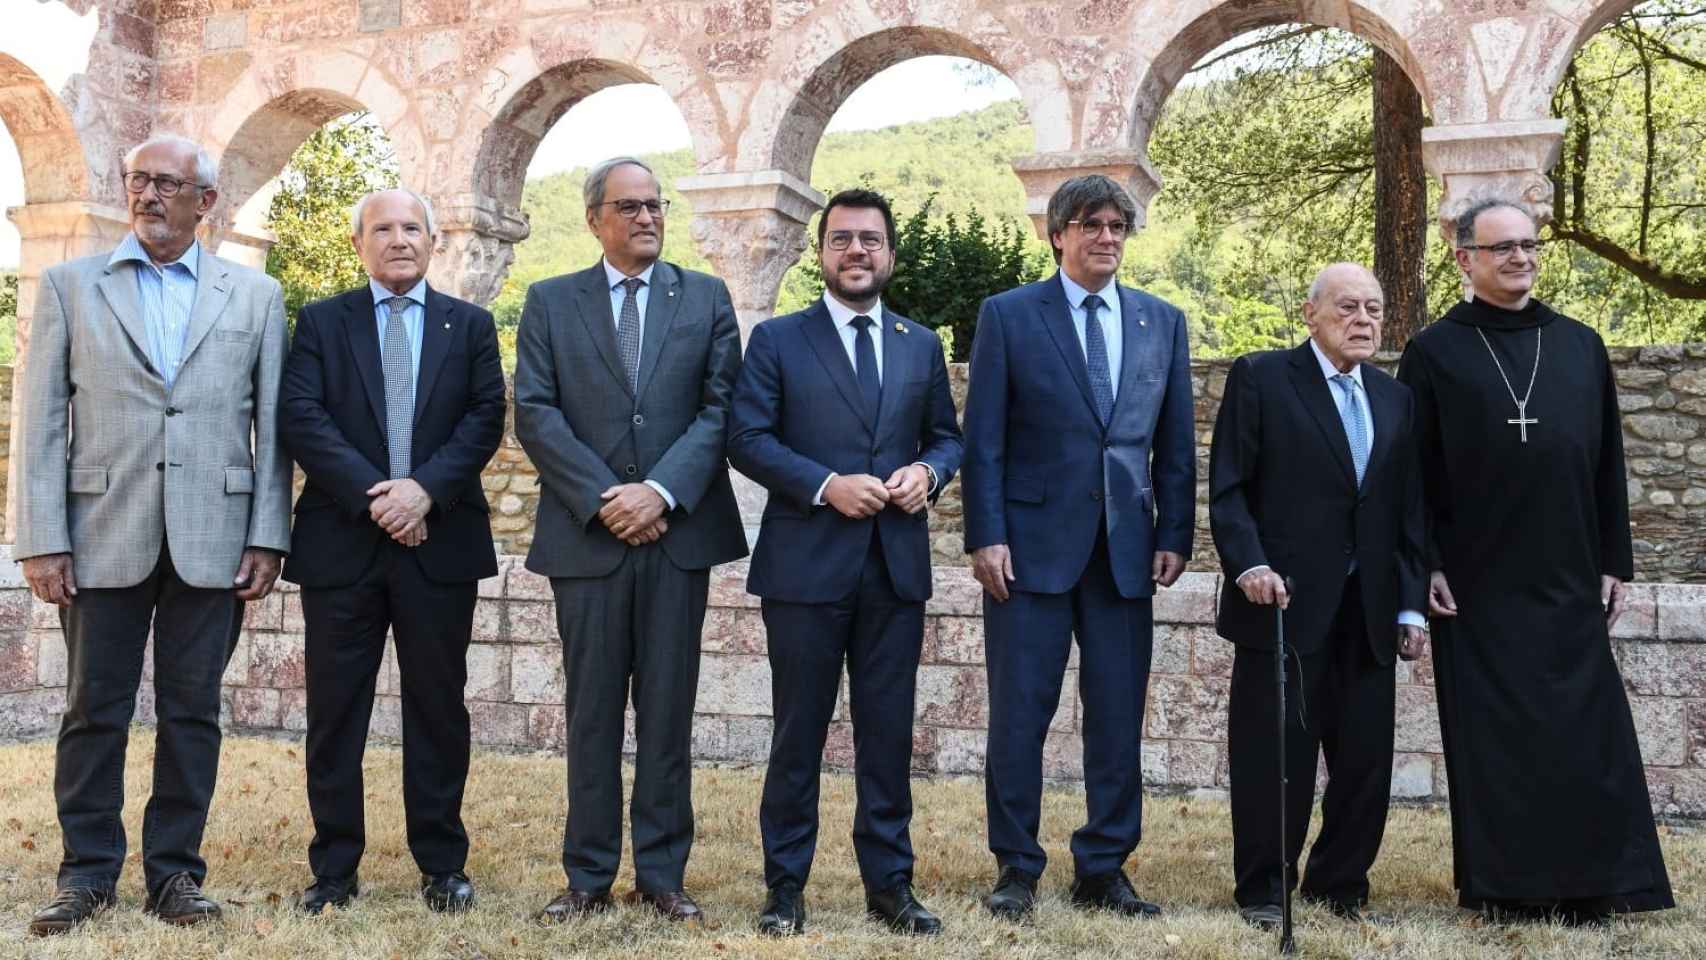 Puigdemont, Torra, Más y Aragonés claman por la independencia catalana en la víspera de la Diada